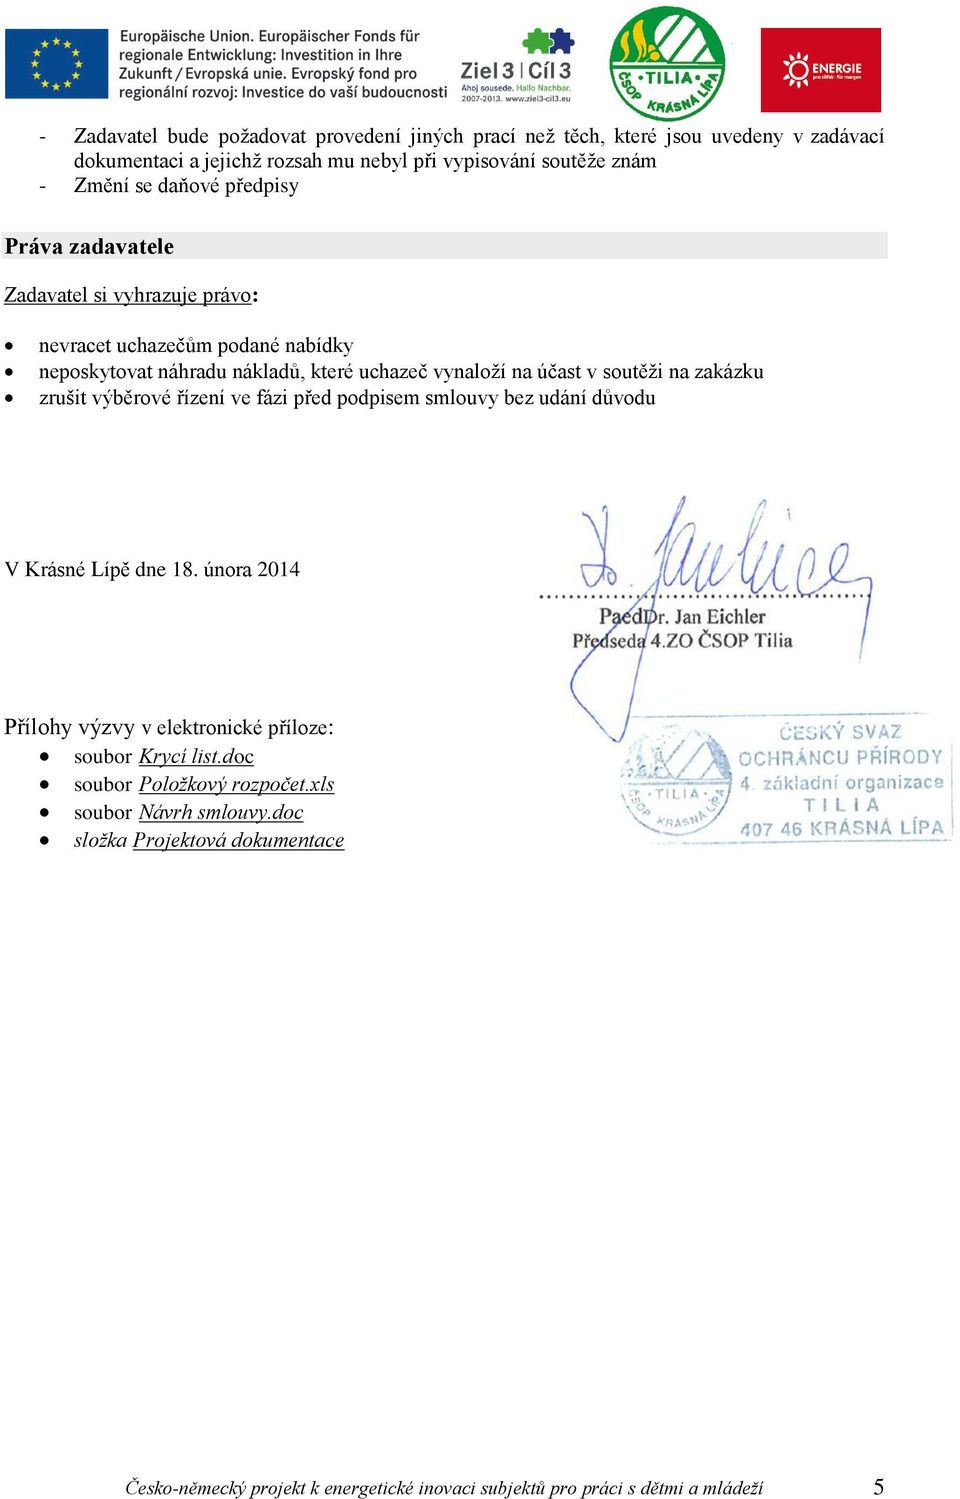 na zakázku zrušit výběrové řízení ve fázi před podpisem smlouvy bez udání důvodu V Krásné Lípě dne 18. února 2014 Přílohy výzvy v elektronické příloze: soubor Krycí list.